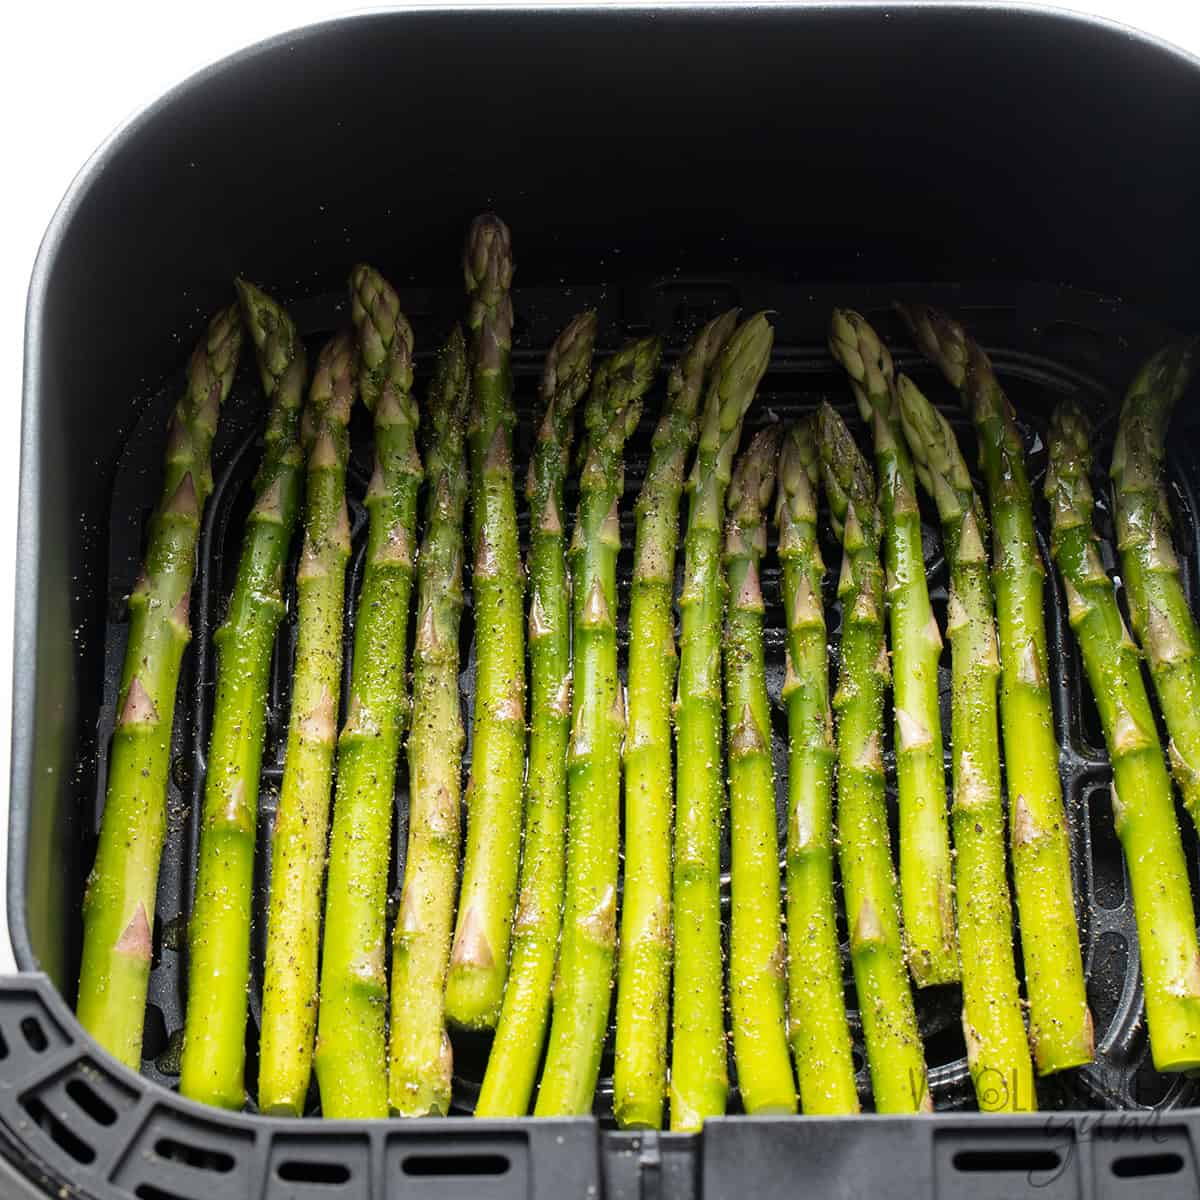 Seasoned asparagus in air fryer basket.